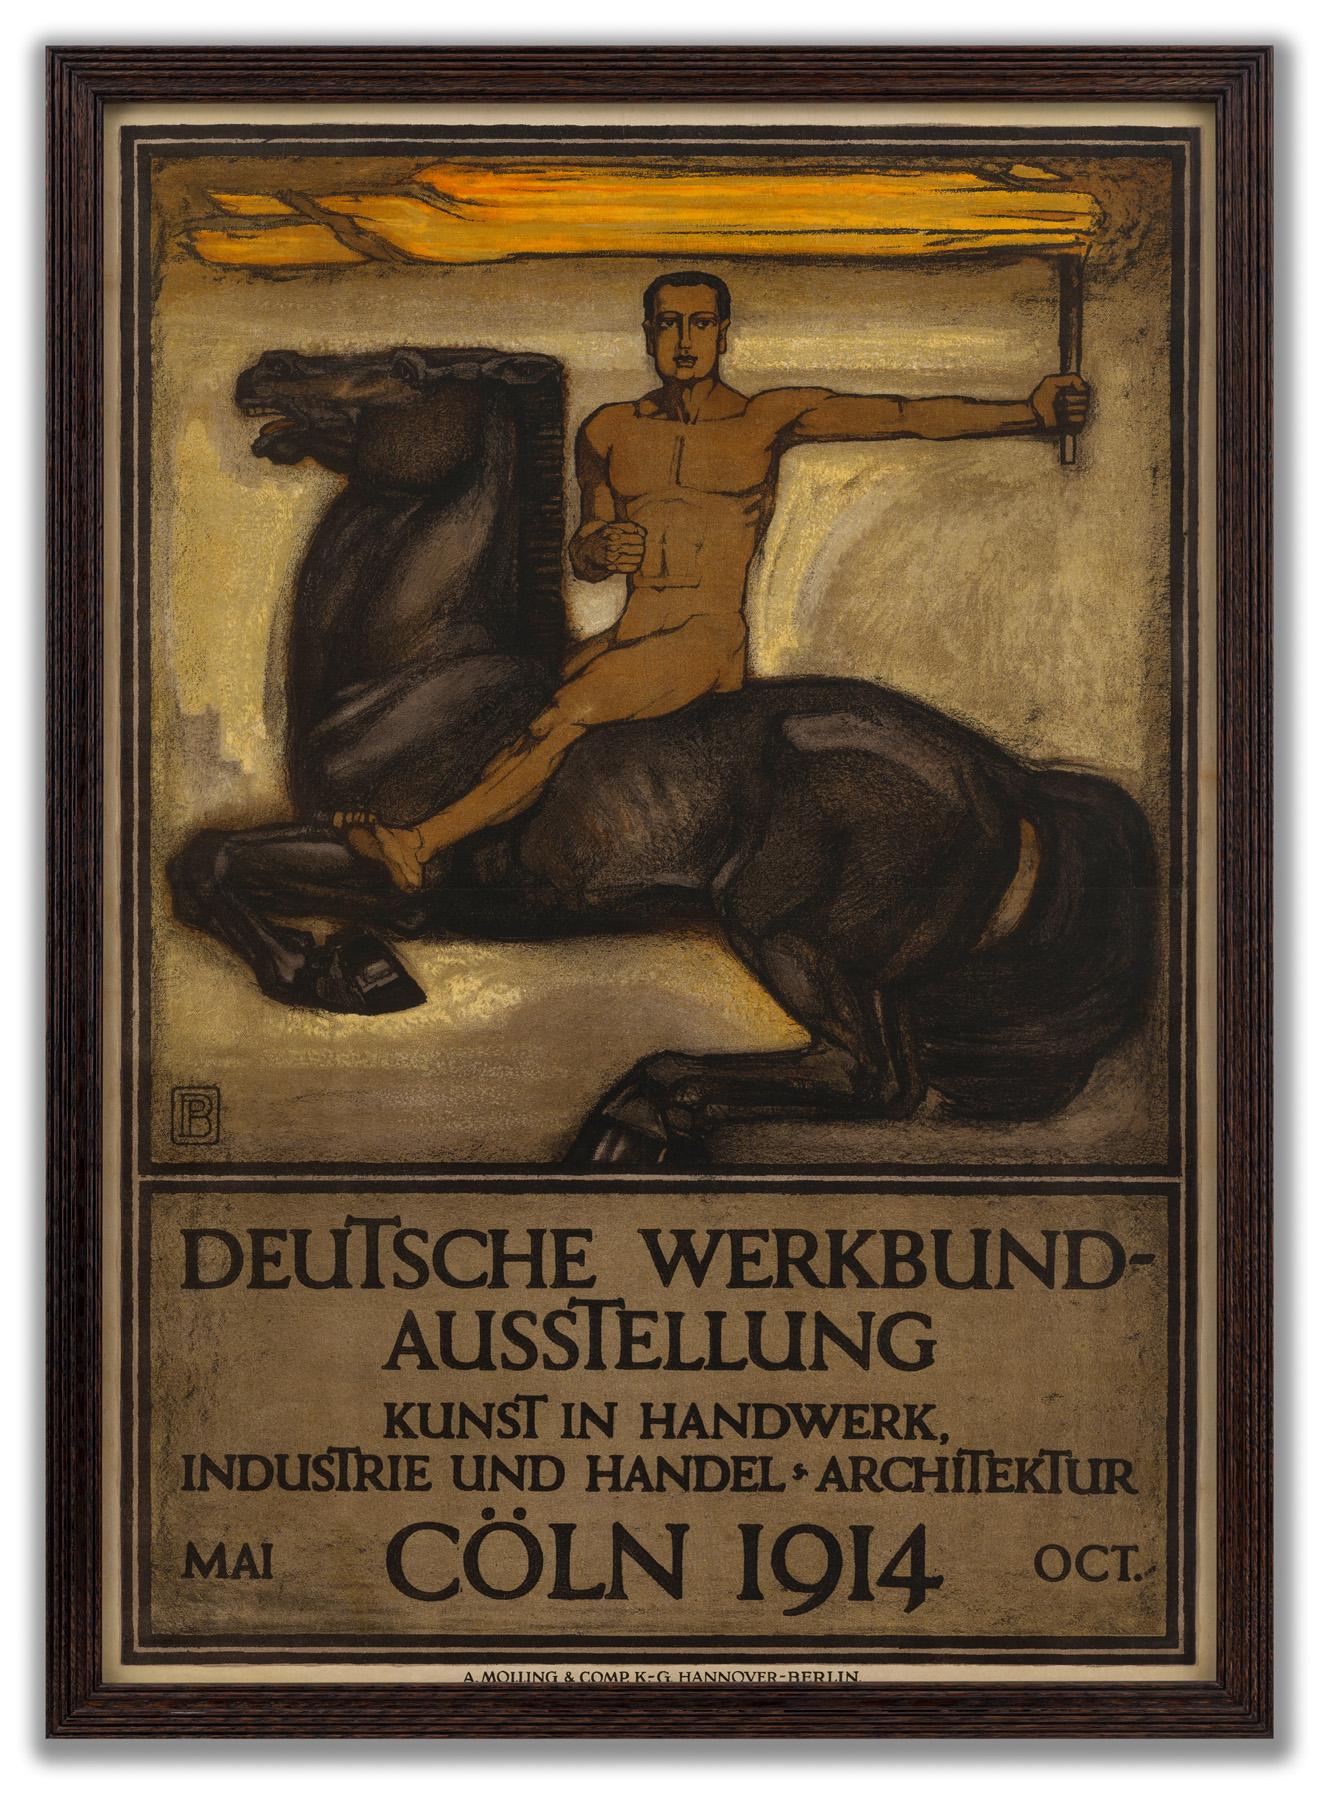 Deutsche Werkbund-Ausstellung (German Workers Union Exhibition Art)